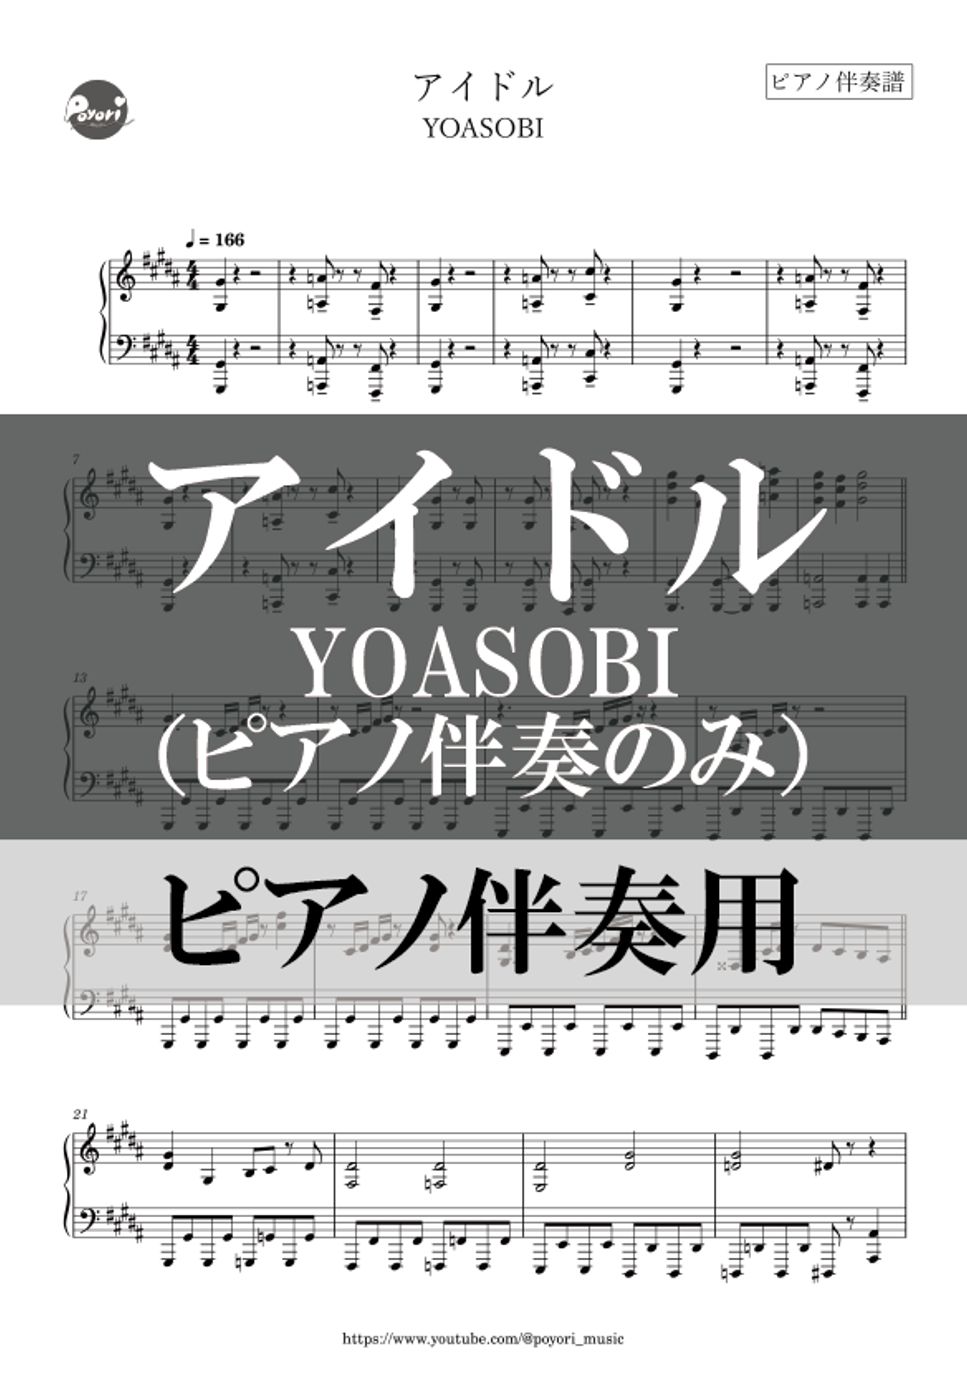 YOASOBI - アイドル (ピアノ伴奏のみ) by poyori